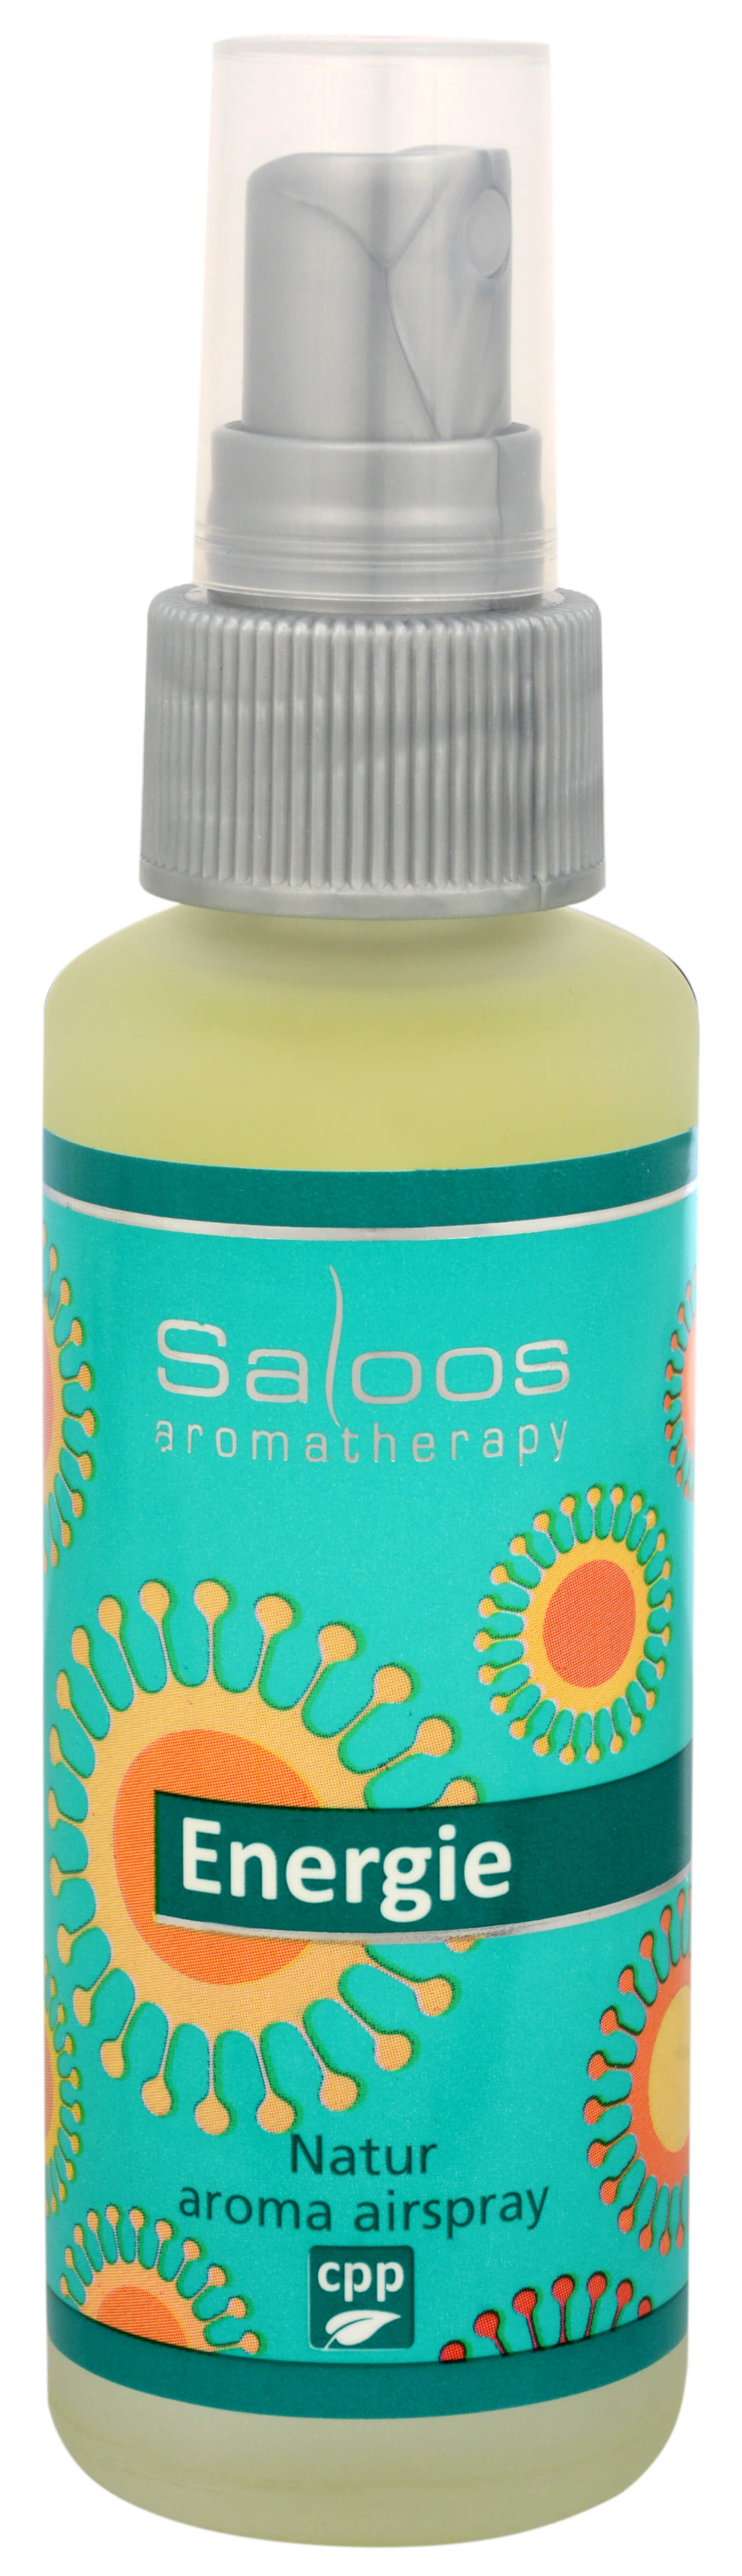 Zobrazit detail výrobku Saloos Natur aroma airspray - Energie (přírodní osvěžovač vzduchu) 50 ml